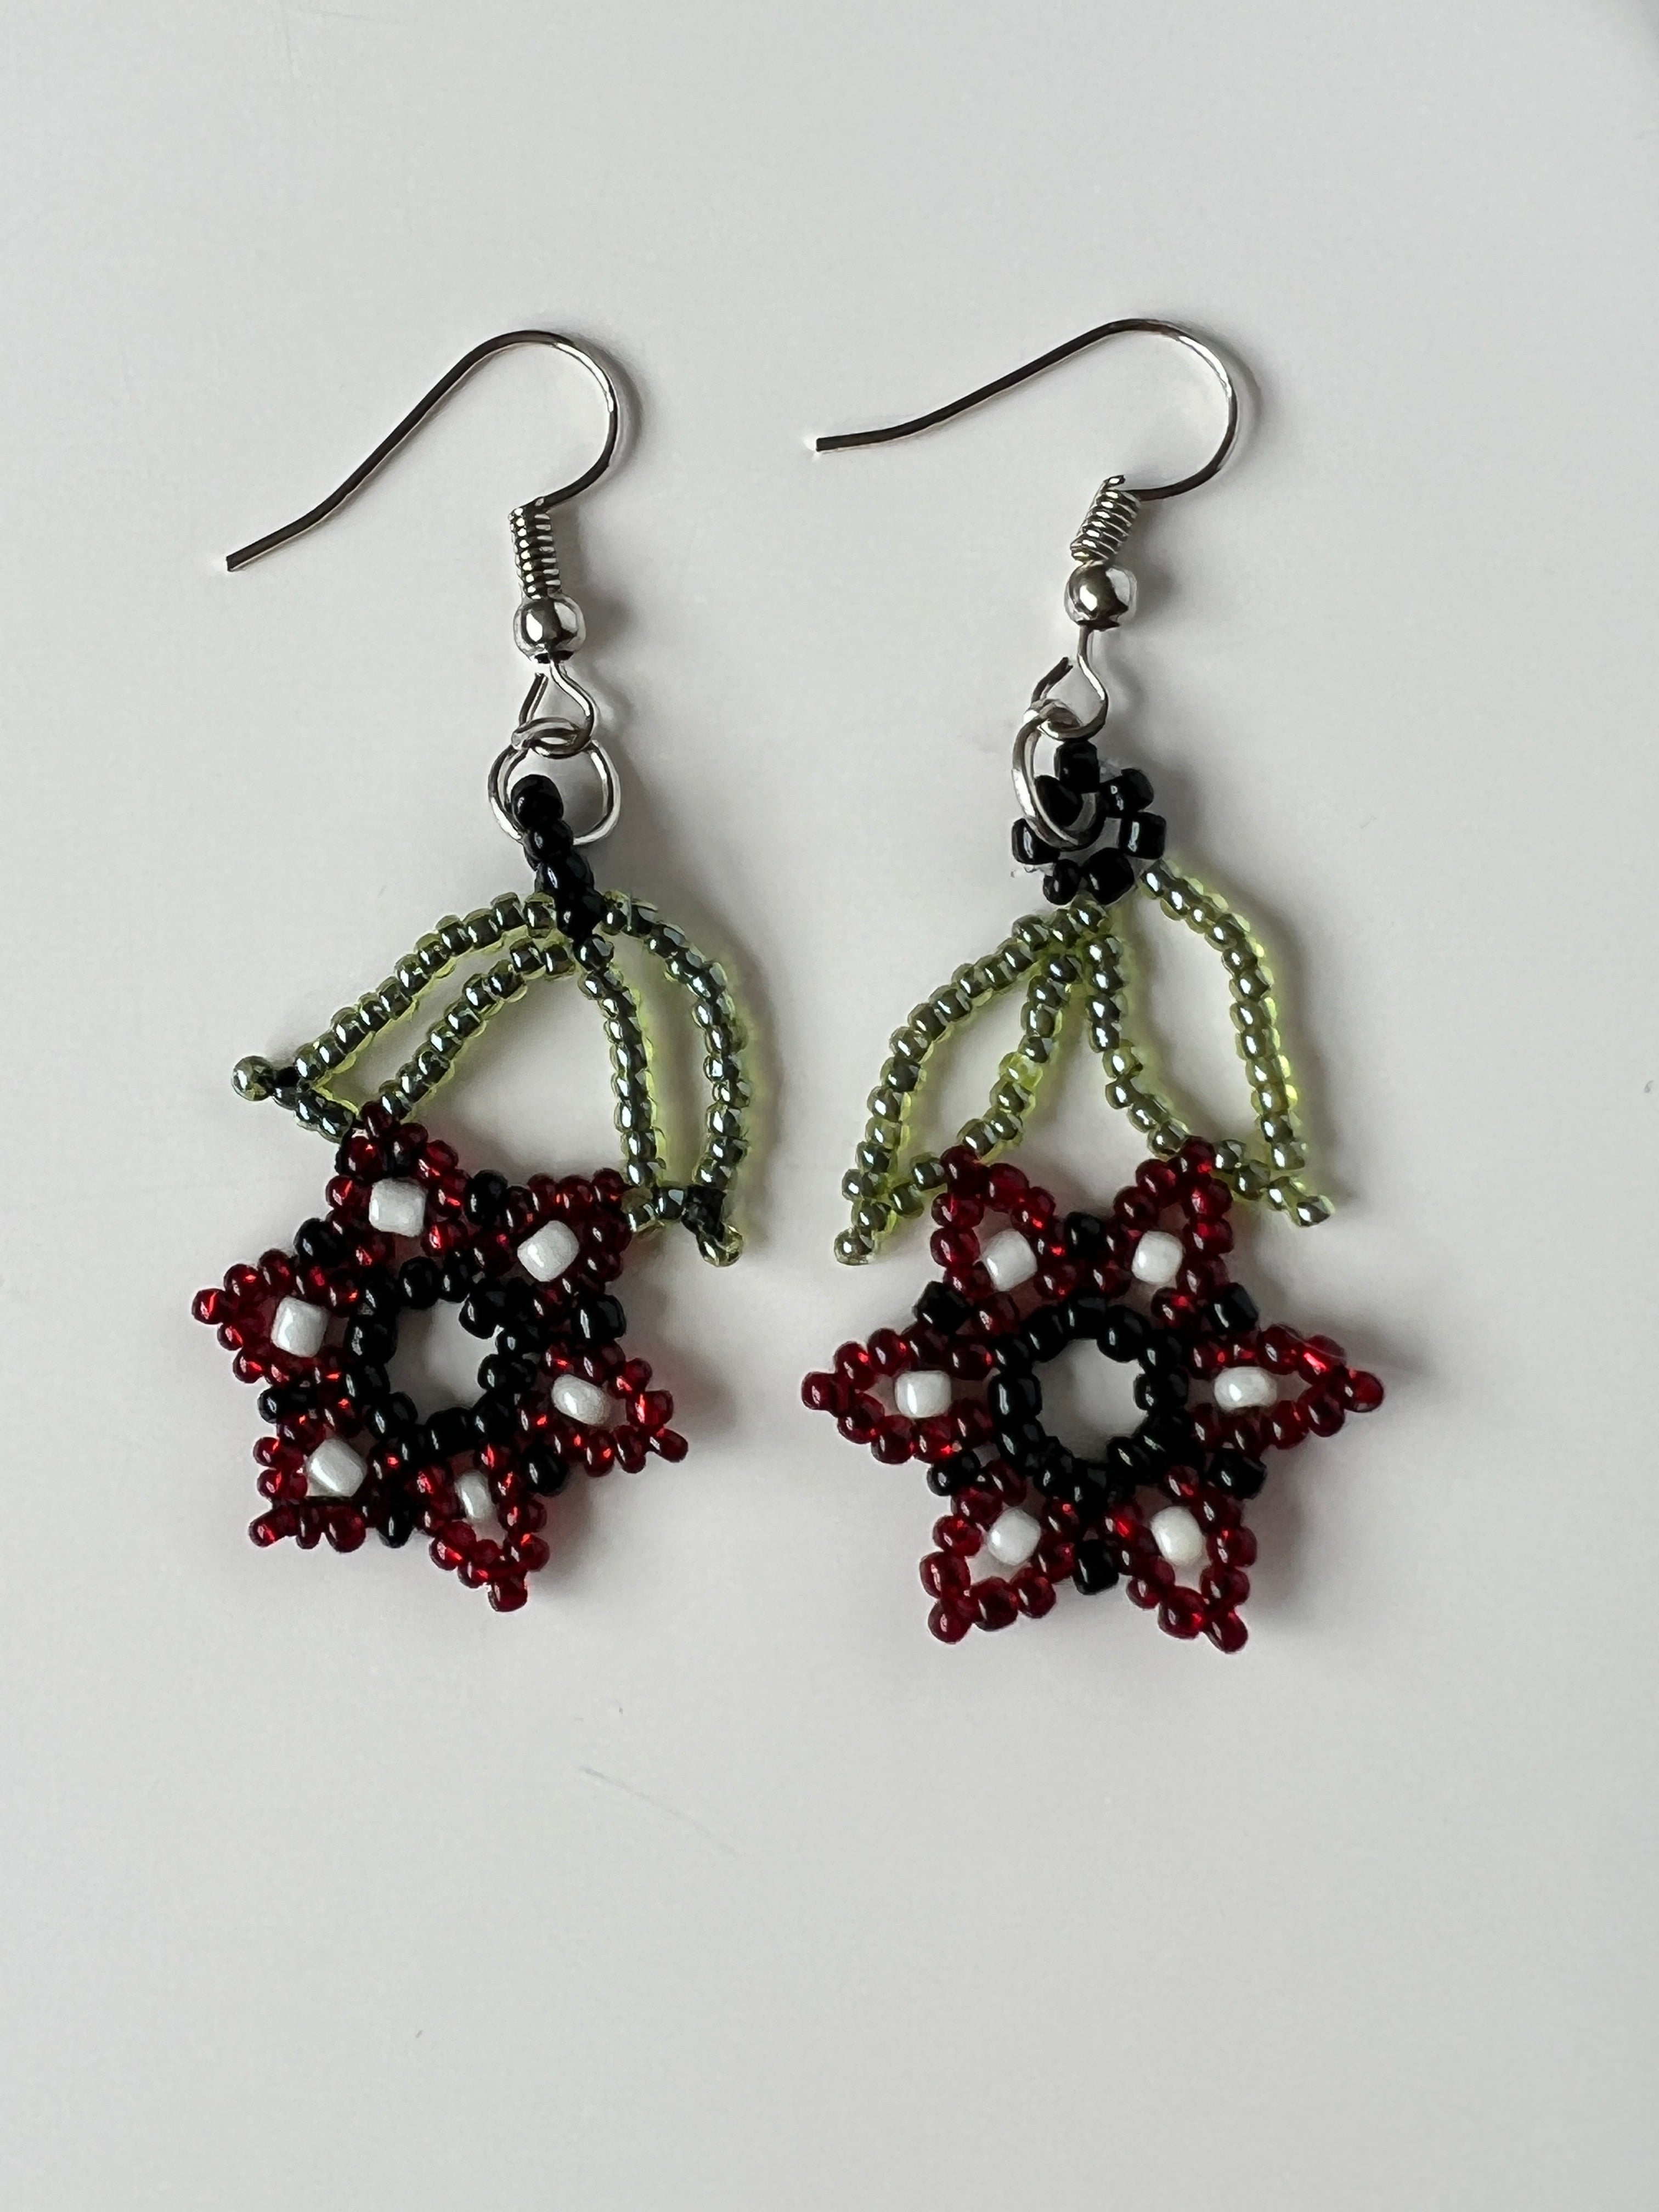 Black Beaded Flower Necklace & Earring Set